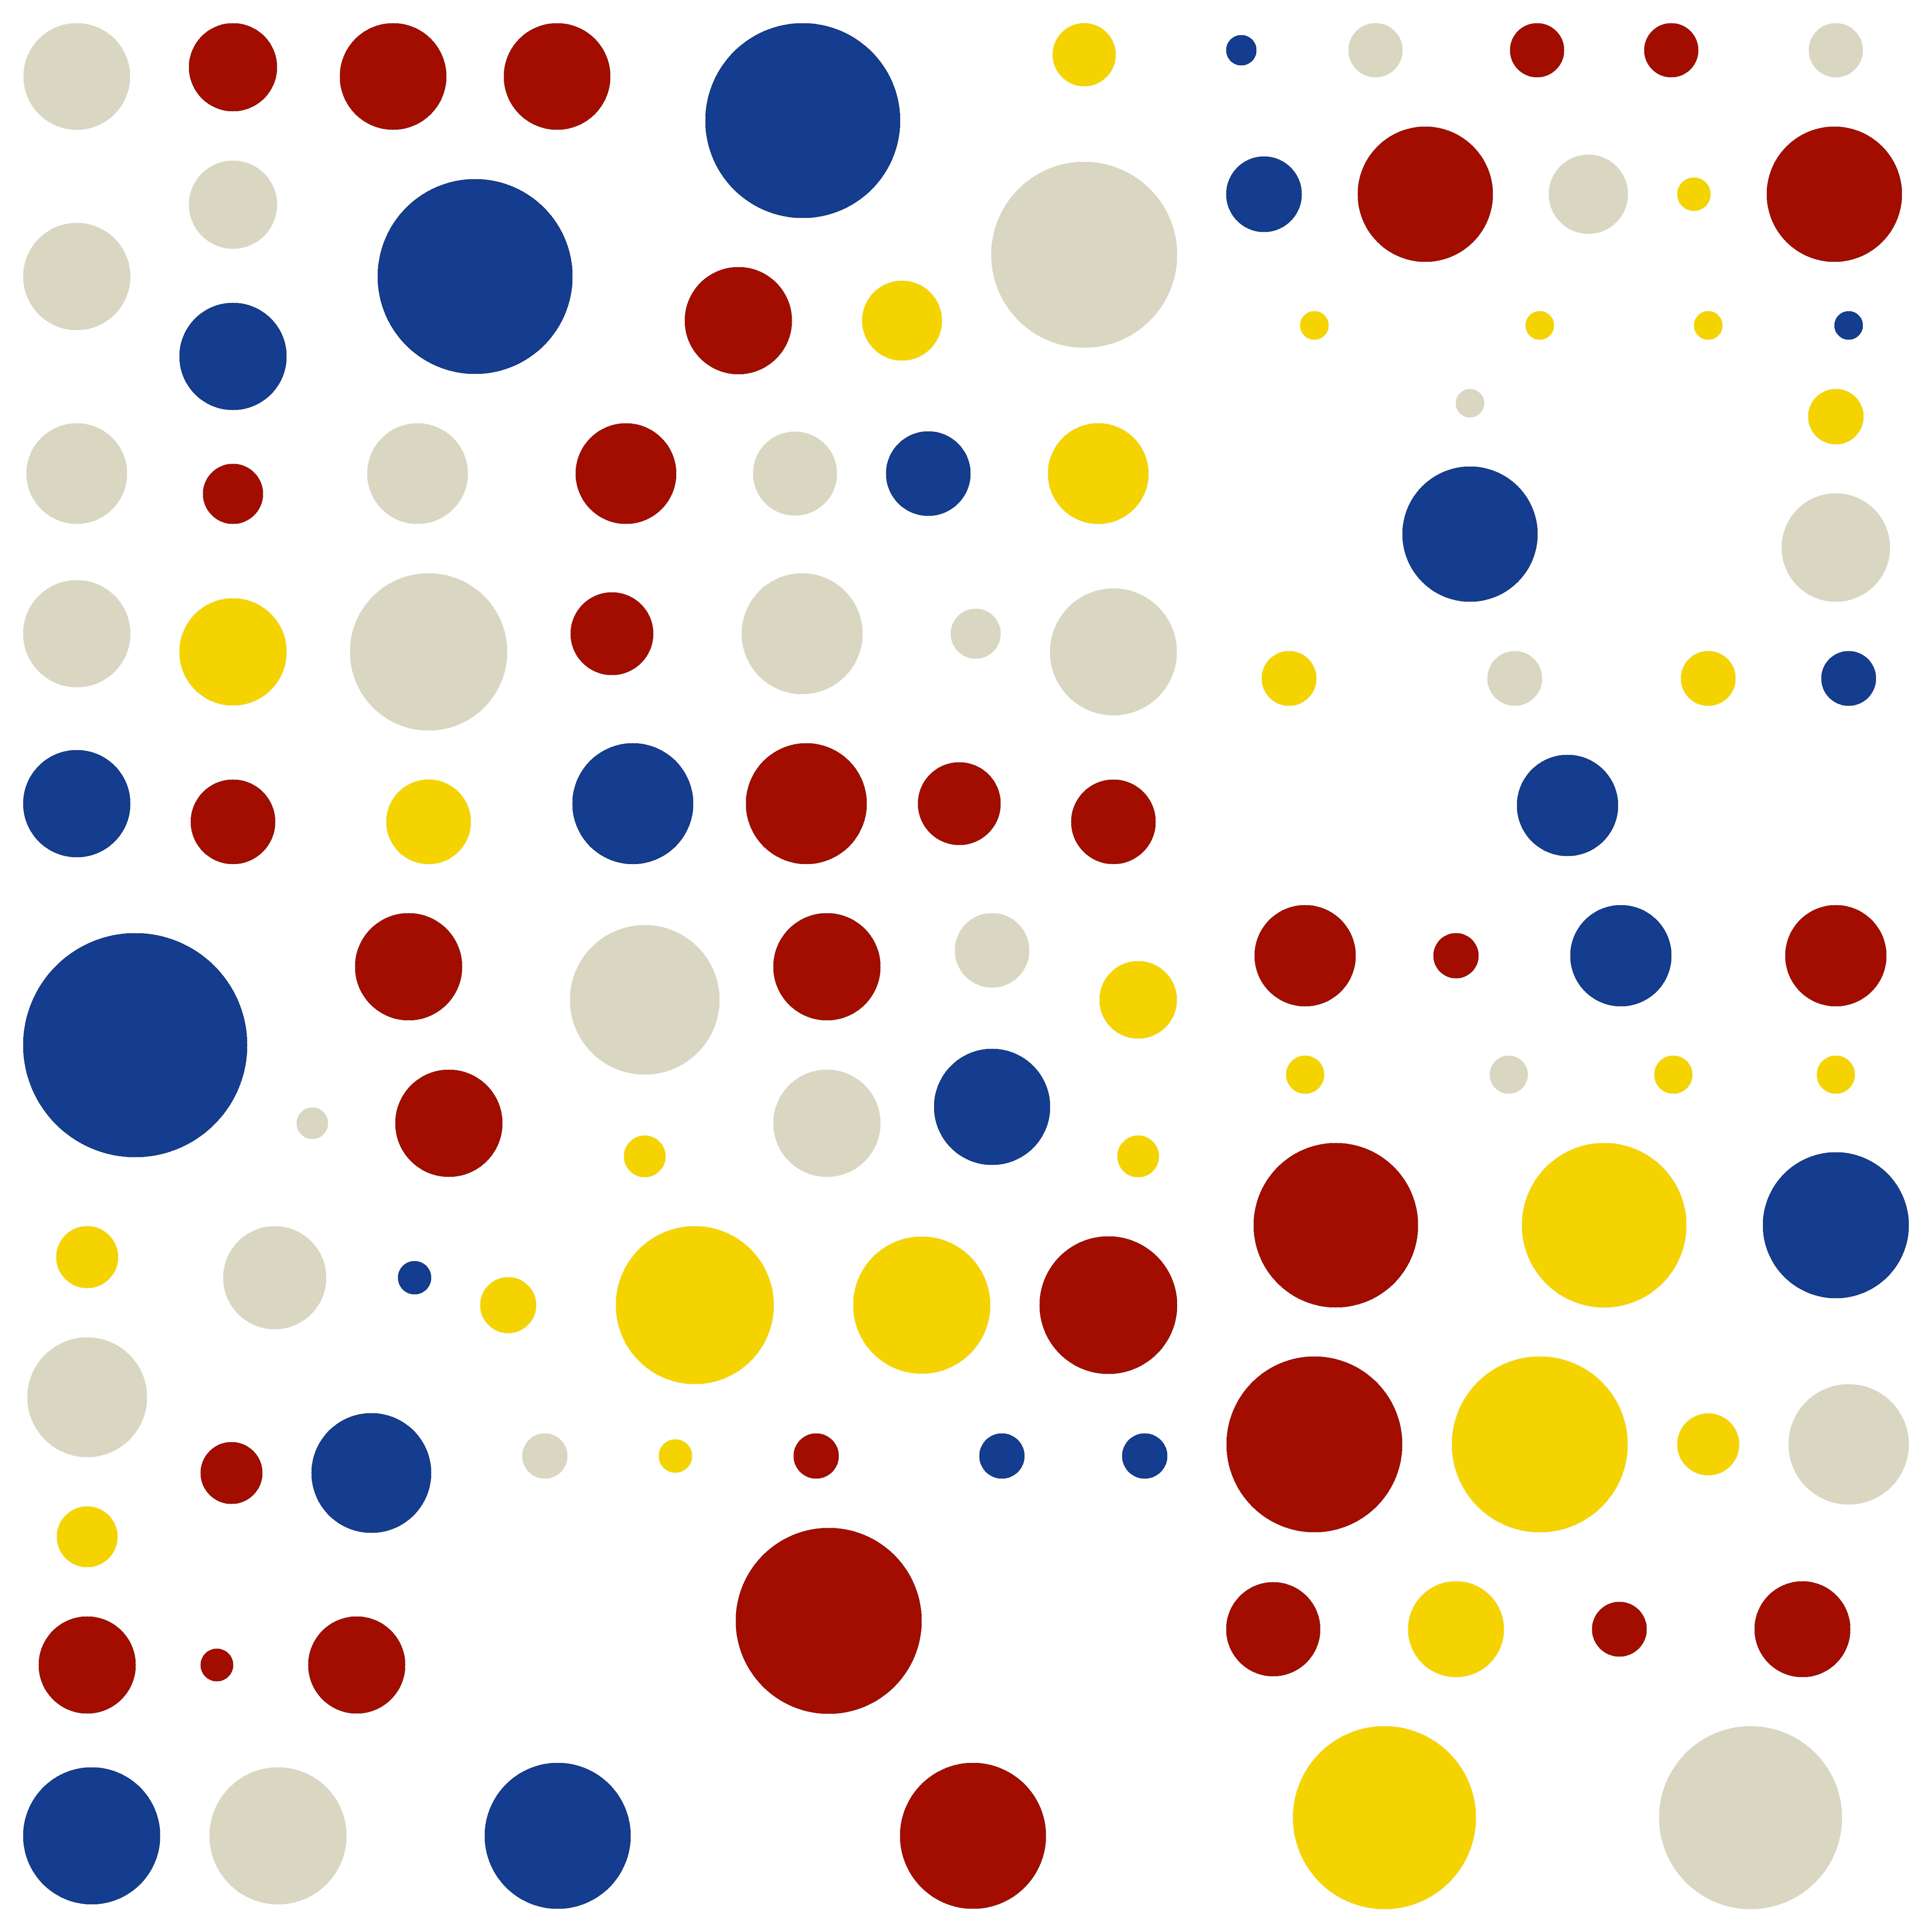 'Number 114' - Circles - MooniTooki Project - Abstract NFT Art @ 6480 x 6480 pixels.